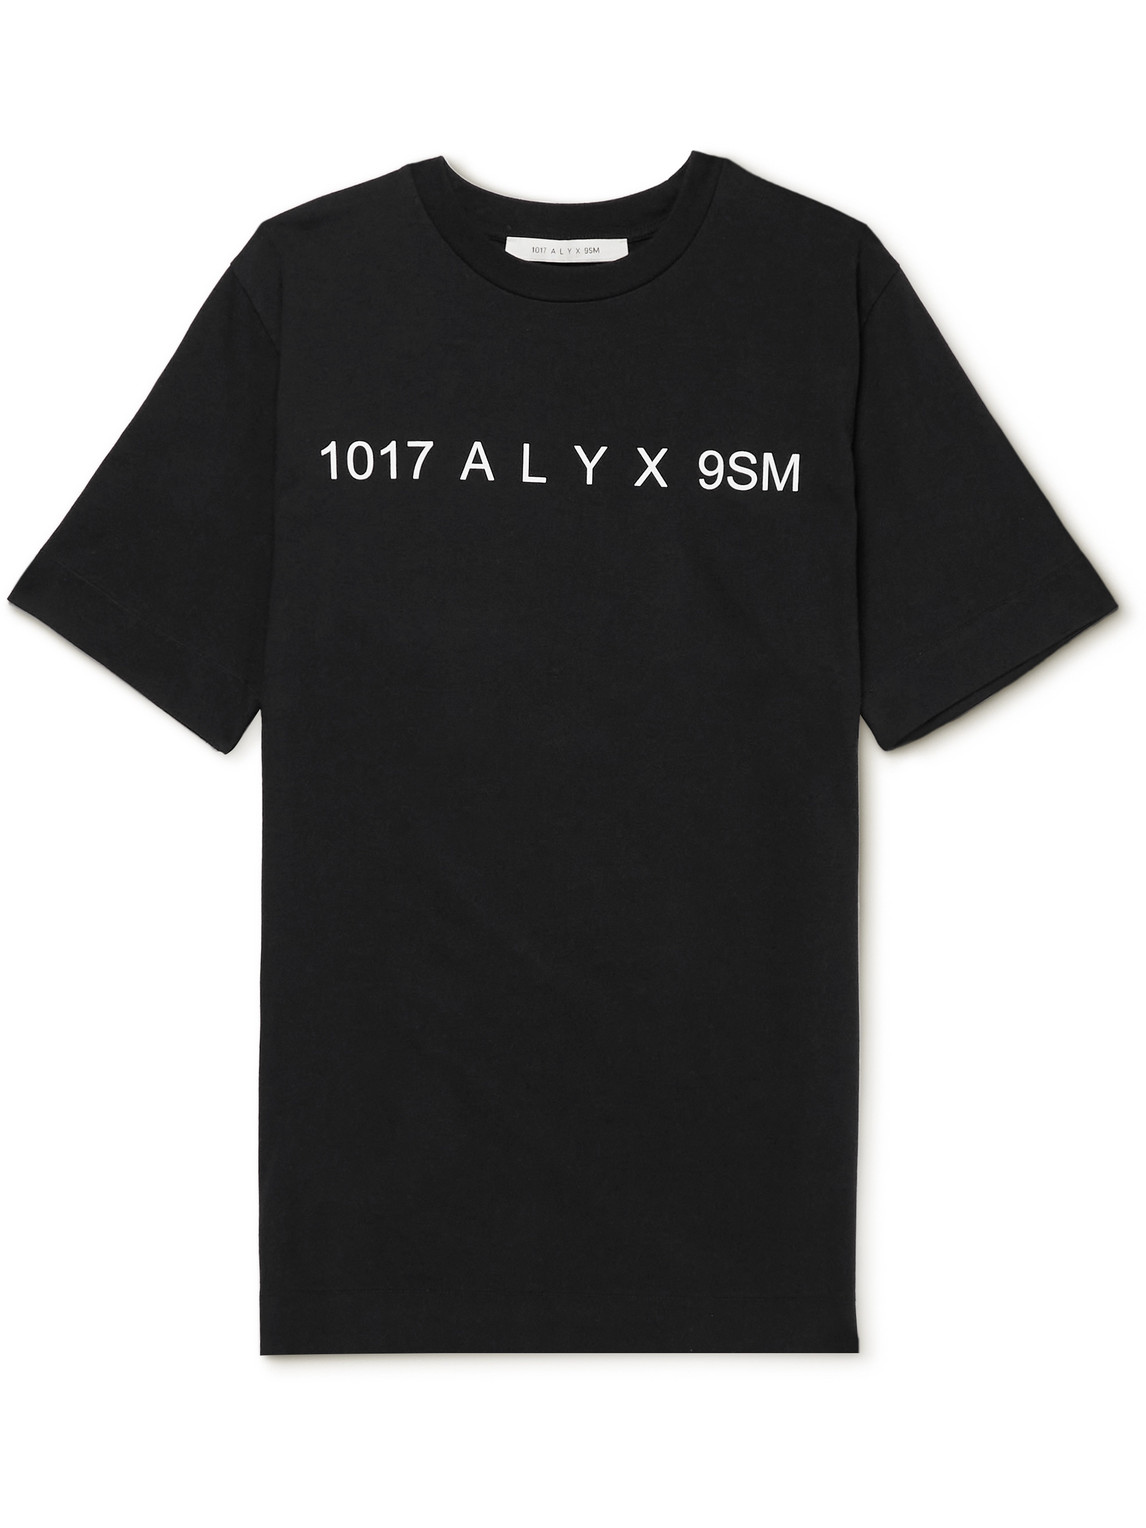 1017 ALYX 9SM Logo-Print Cotton-Jersey T-Shirt